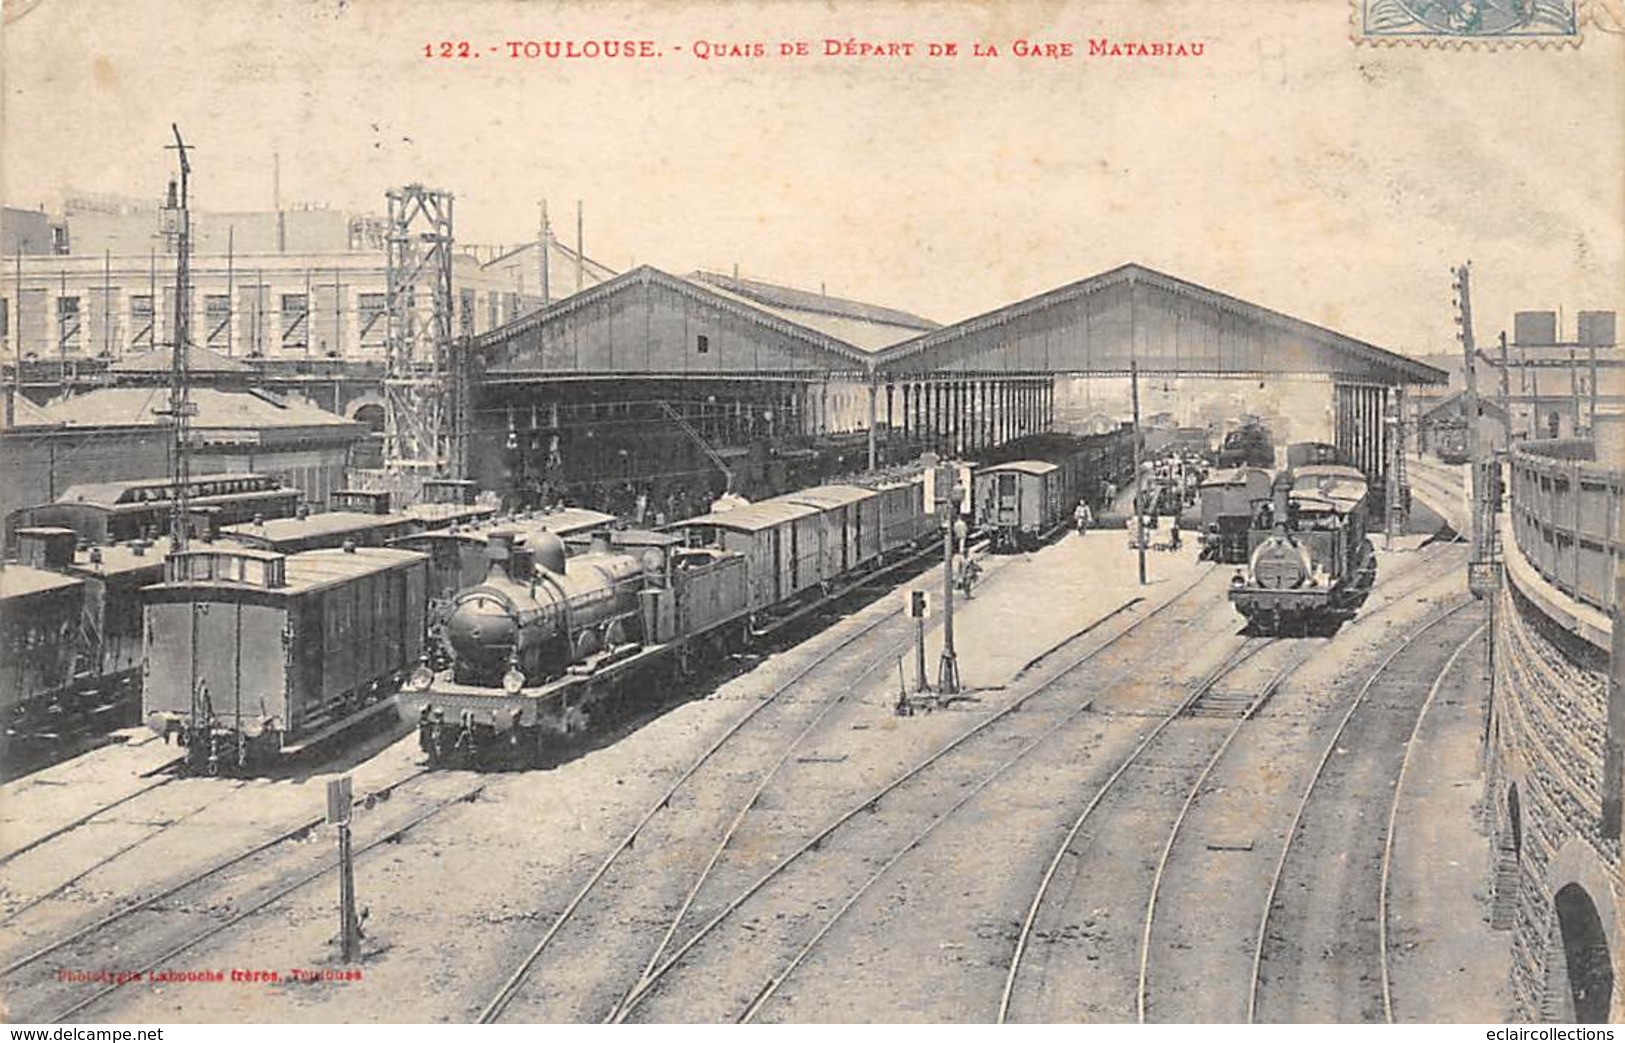 Toulouse        31       Lot de 5 cartes sur la gare.Intérieur et extérieur avec trains.       ( Voir scan)